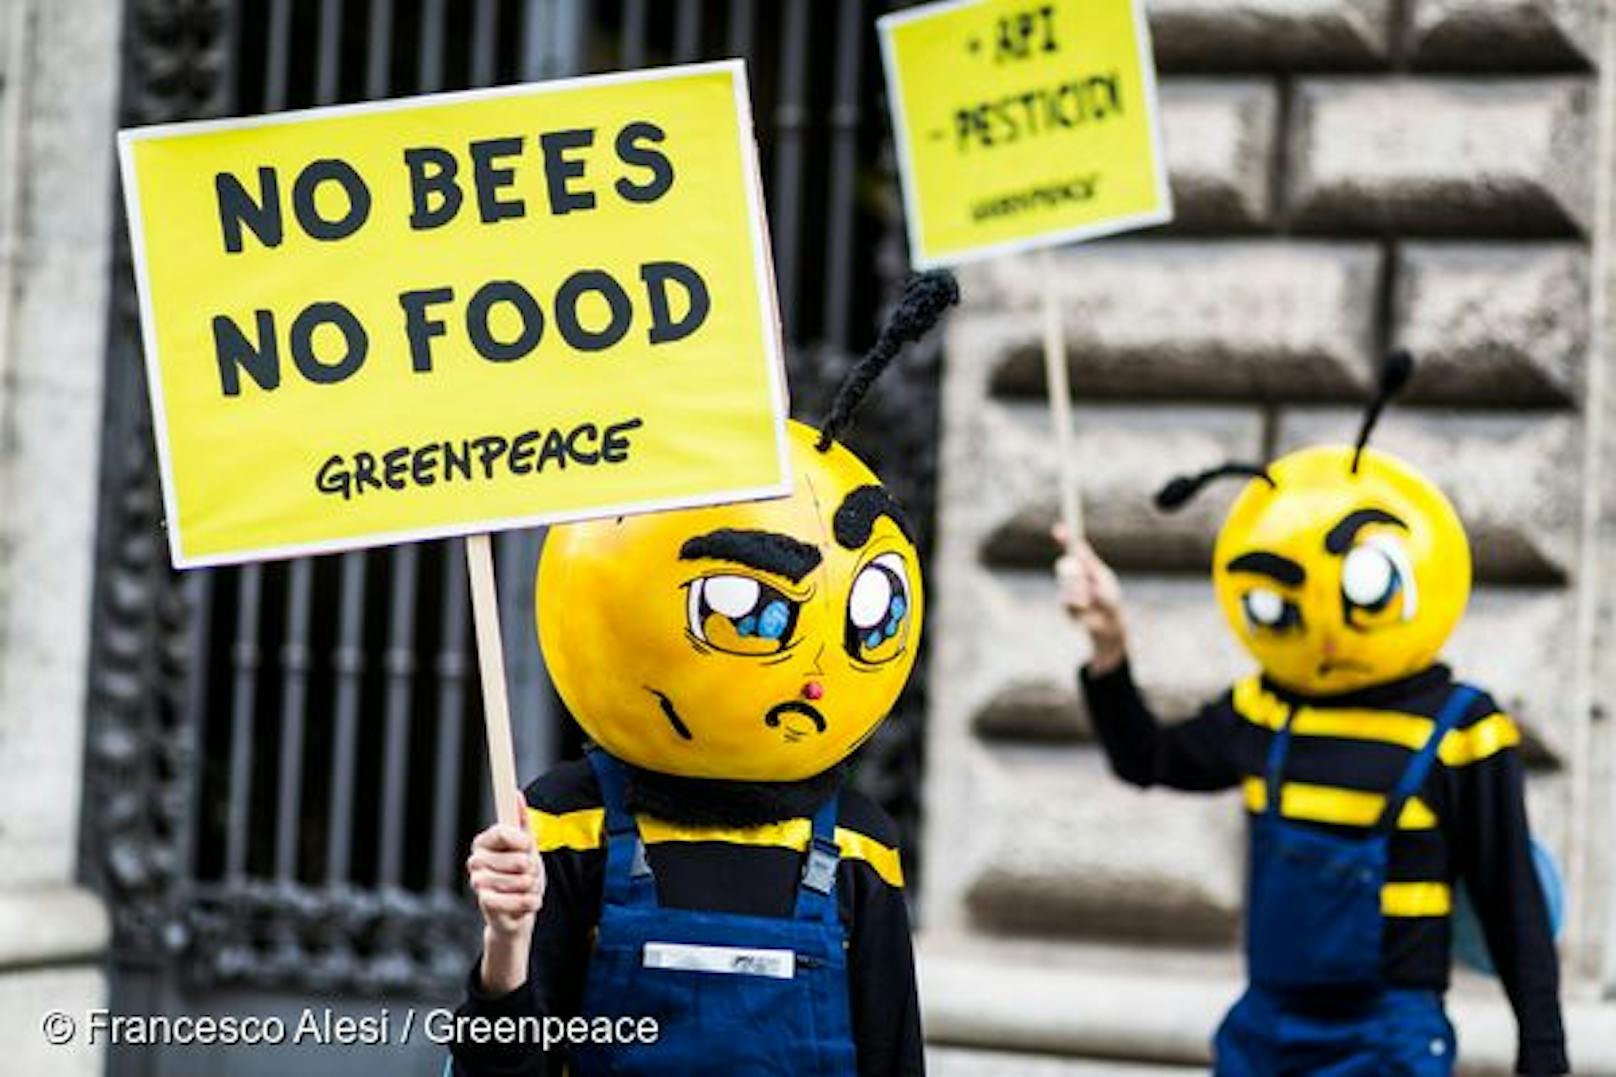 Umweltschützer fordern ein Neonicotinoide-Verbot. Das Pflanzenschutzmittel töte nämlich Bienen und Hummeln. Das Gift lasse auch den Fischbestand dramatisch schrumpfen.